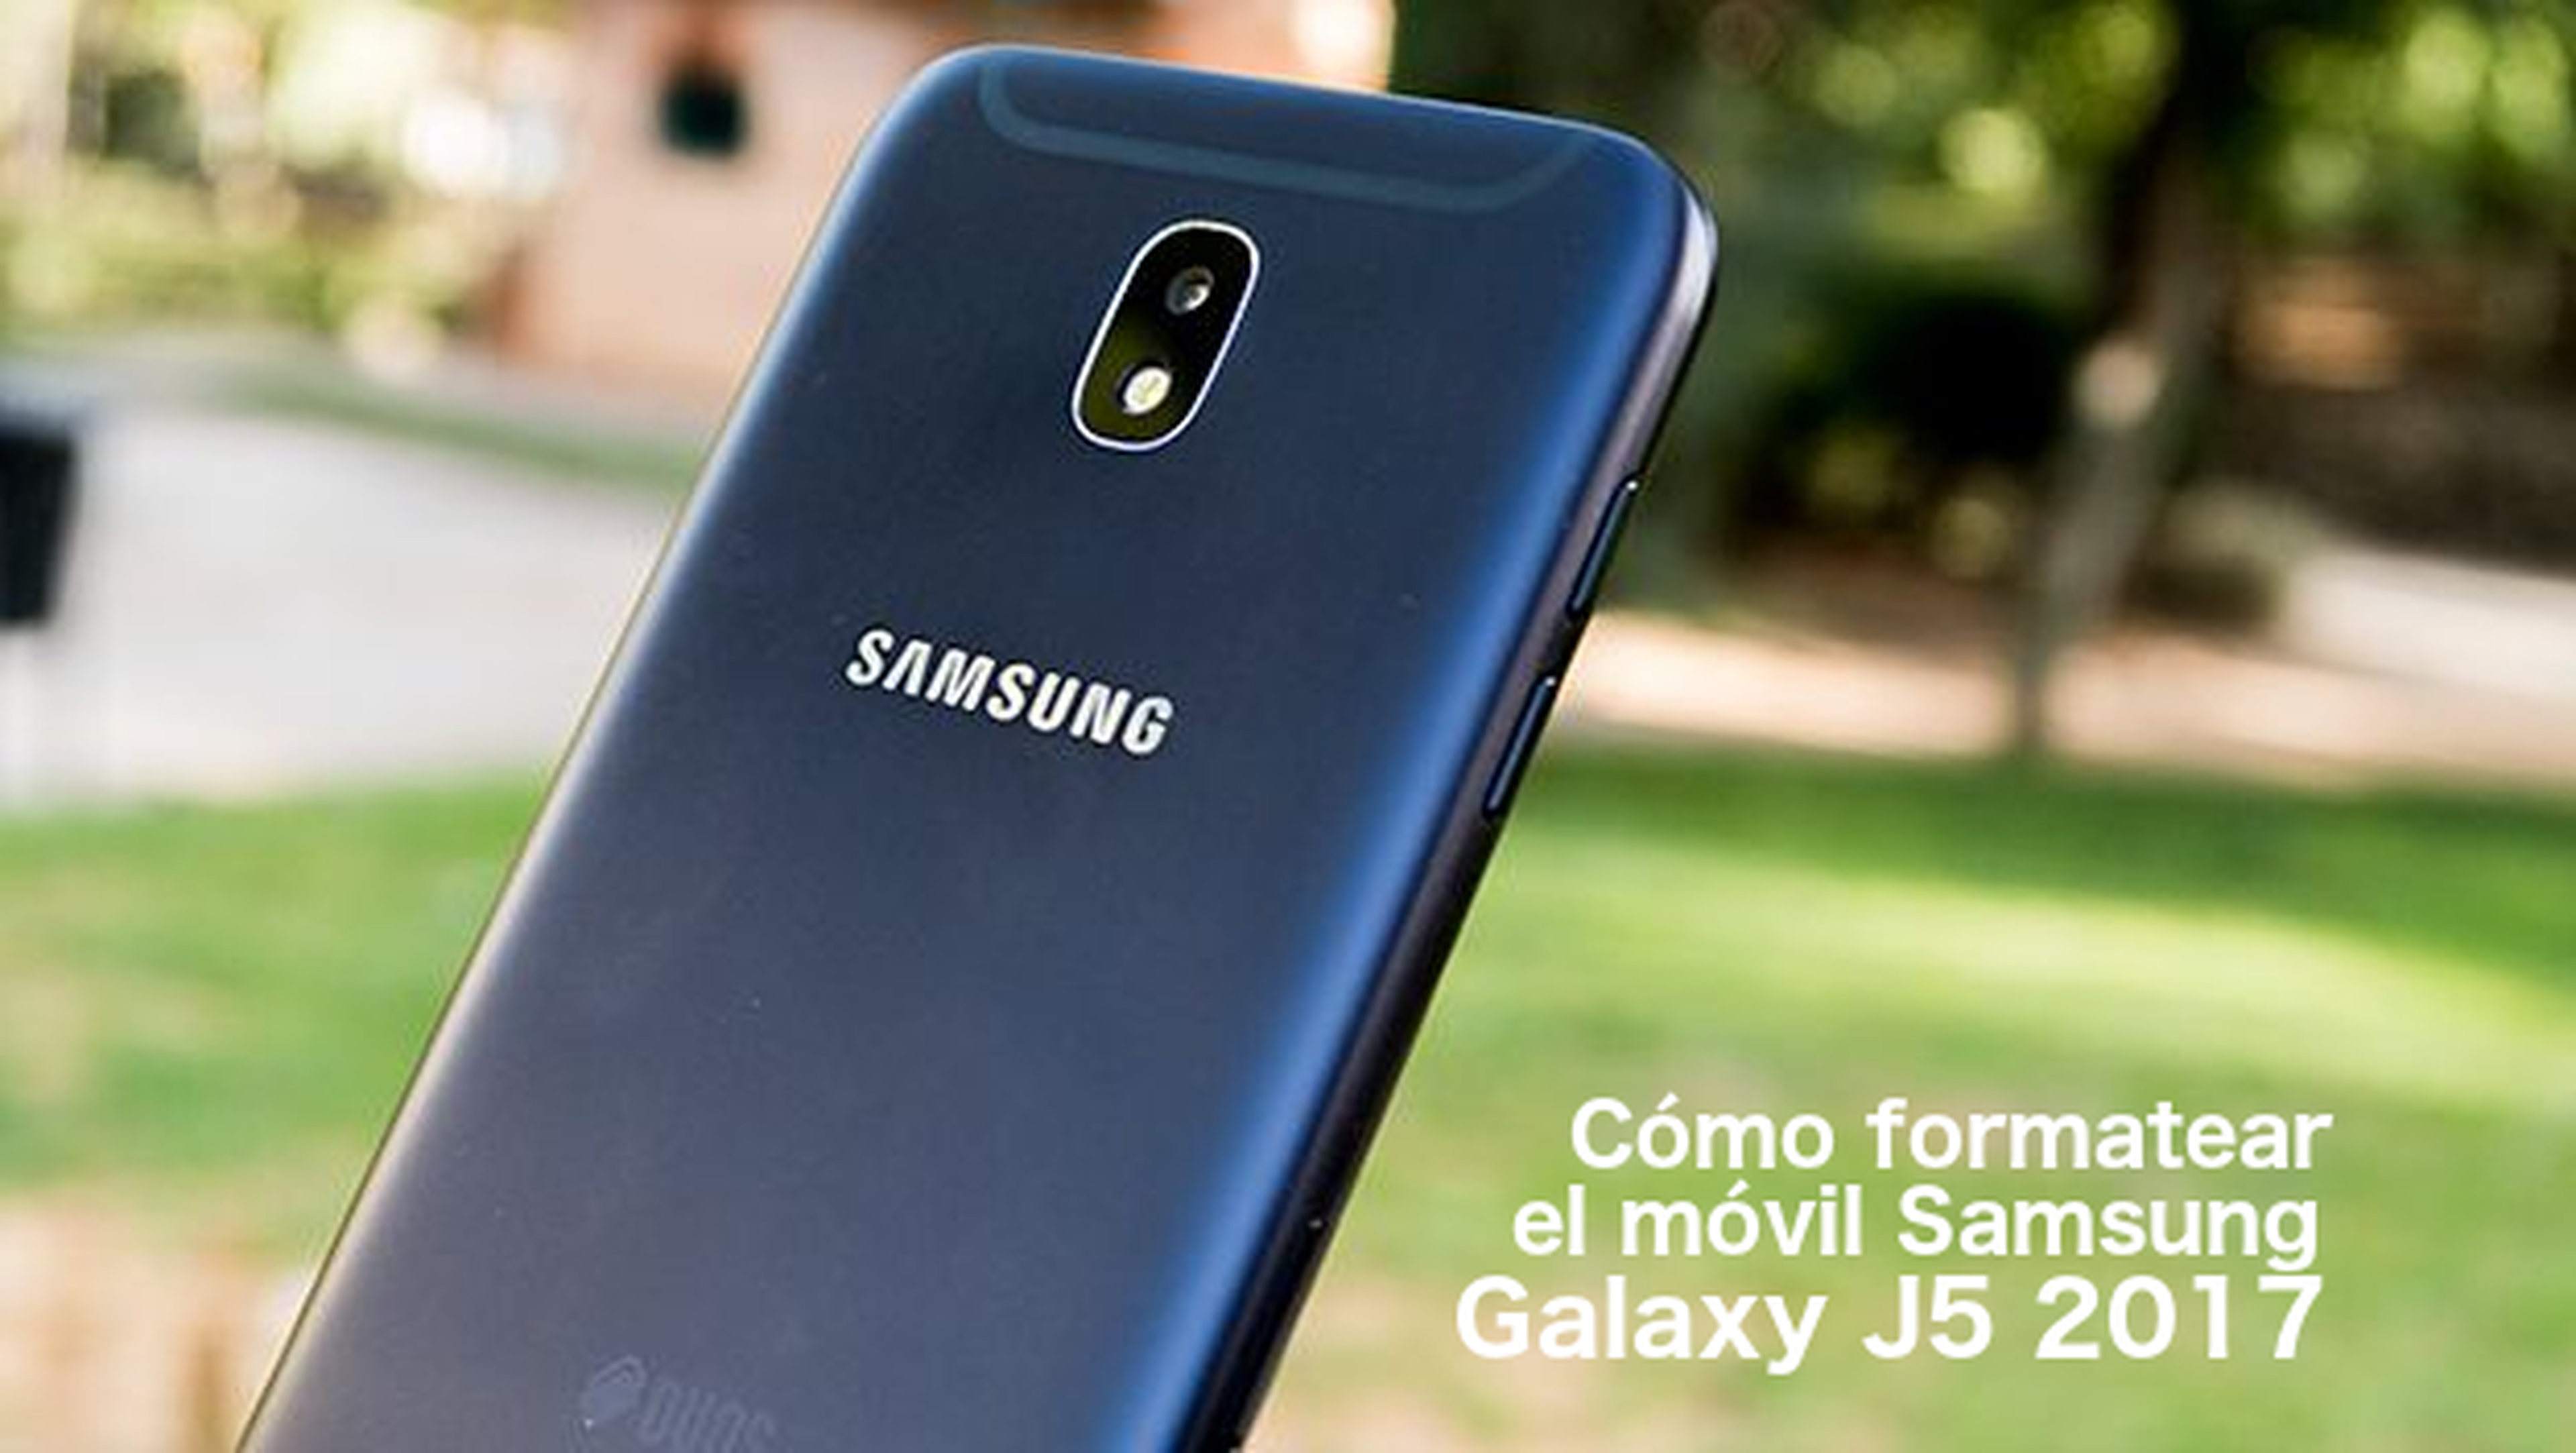 Samsung Galaxy J5 2017: Cómo formatear | Computer Hoy